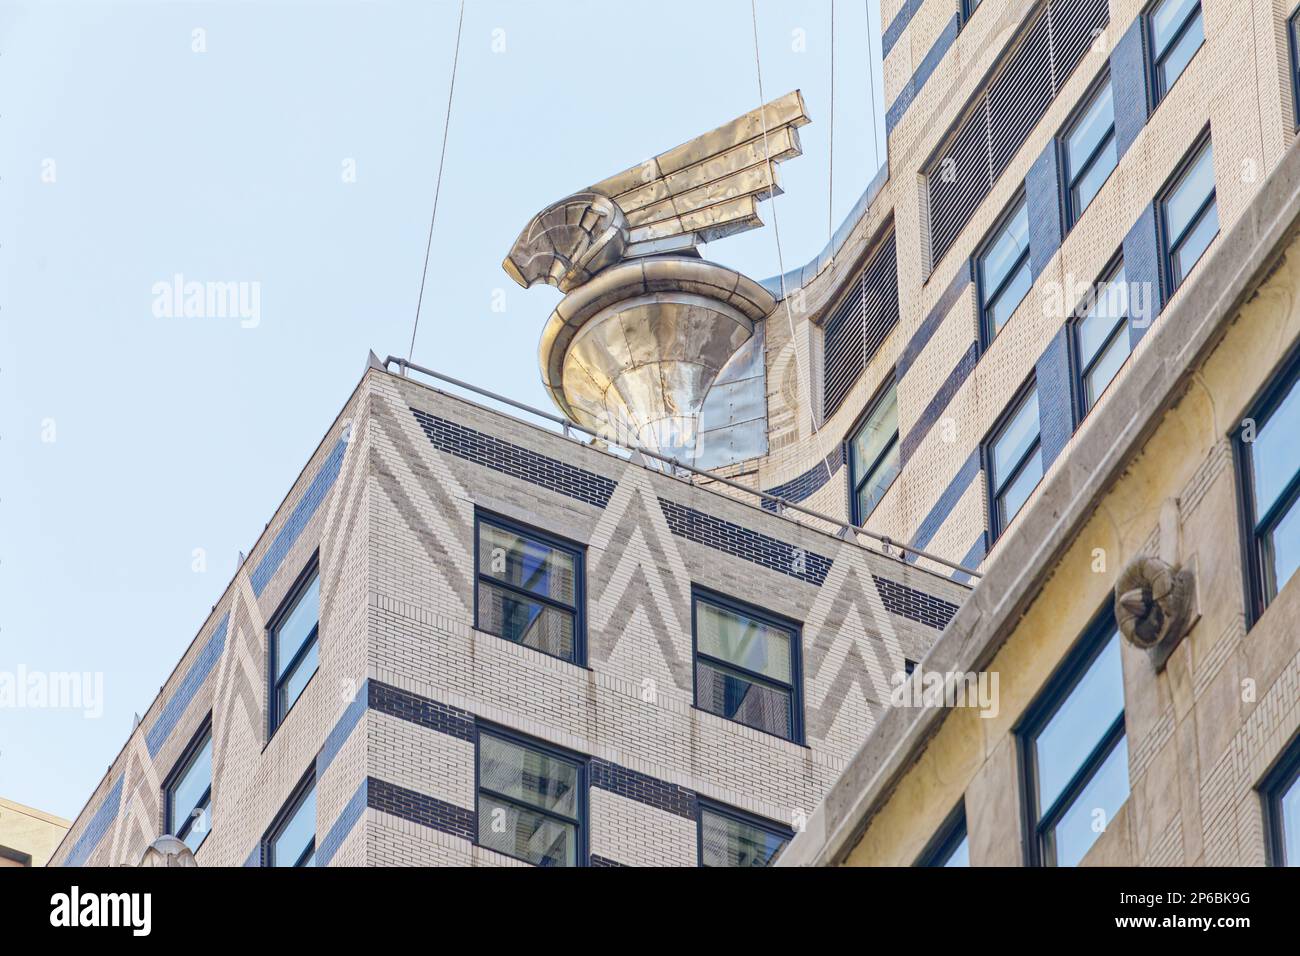 I dettagli fanno parte del Chrysler Building. Grigio, bianco e nero mattoni, finestre a filo rendono l'edificio elegante; gli ornamenti in acciaio inox proclamano il marchio. Foto Stock